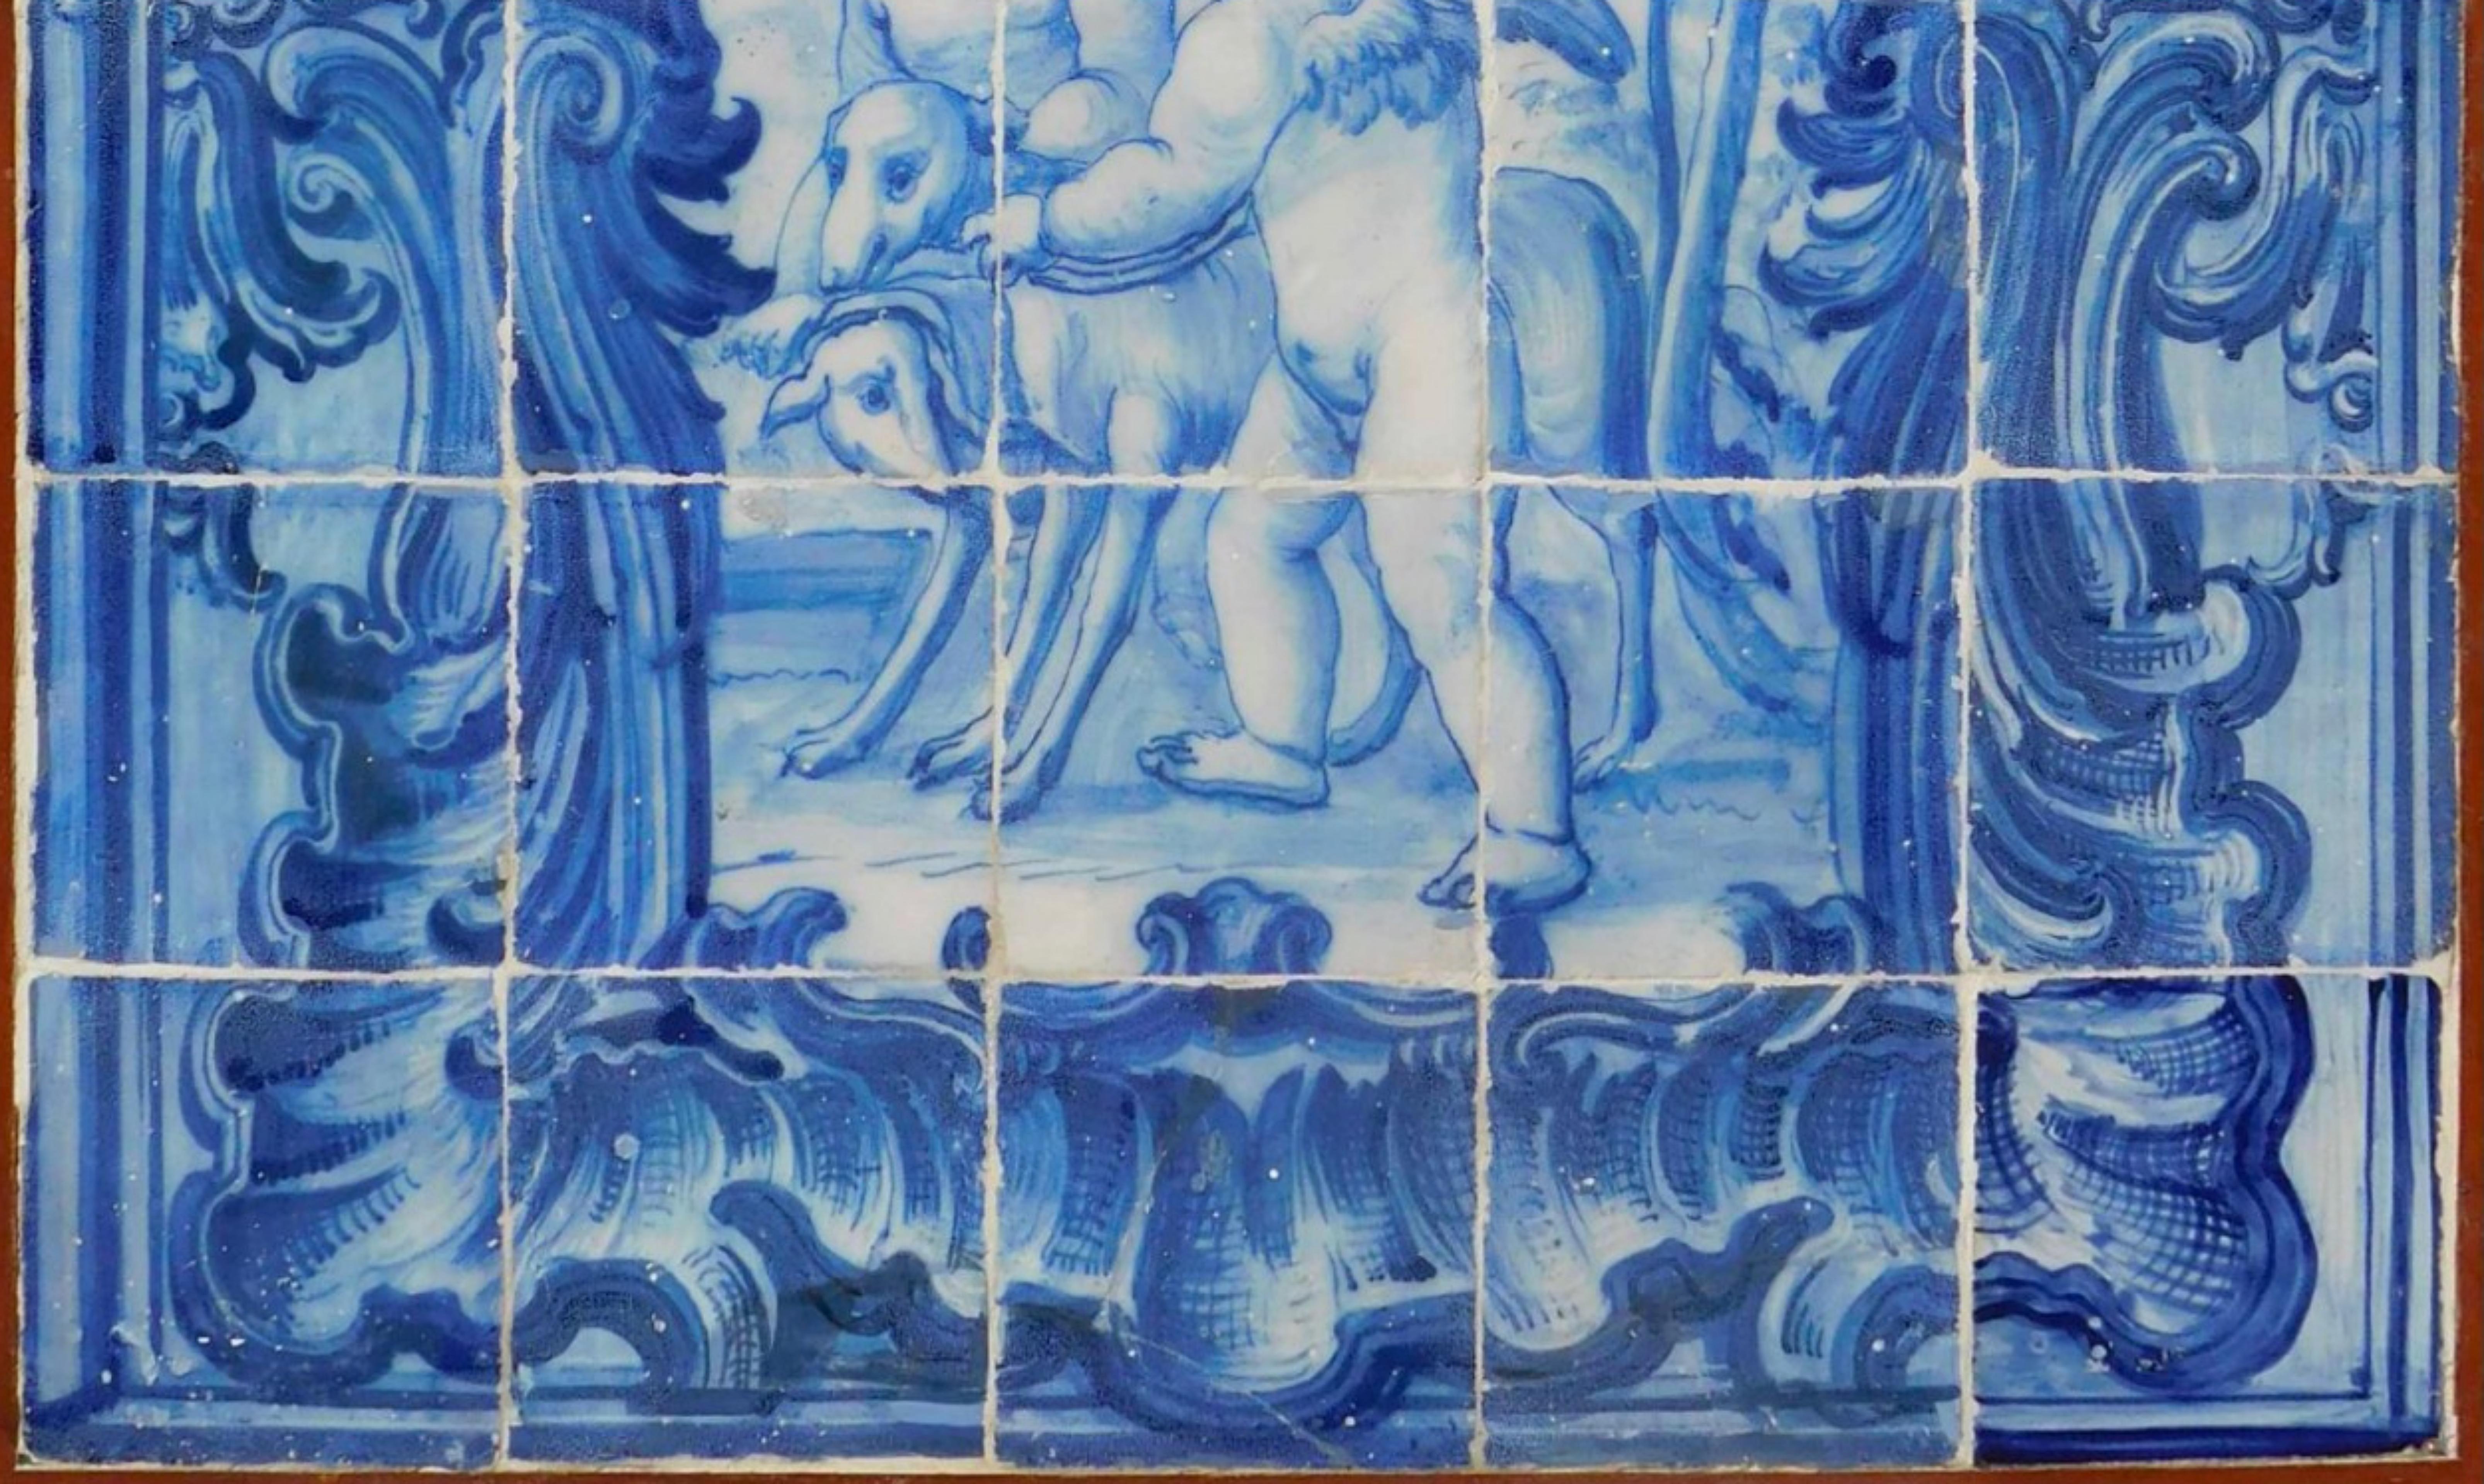 Portugiesische Kacheltafel „Engel“ aus dem 18. Jahrhundert
70cm x 84cm
30 Fliesen
gute Bedingungen